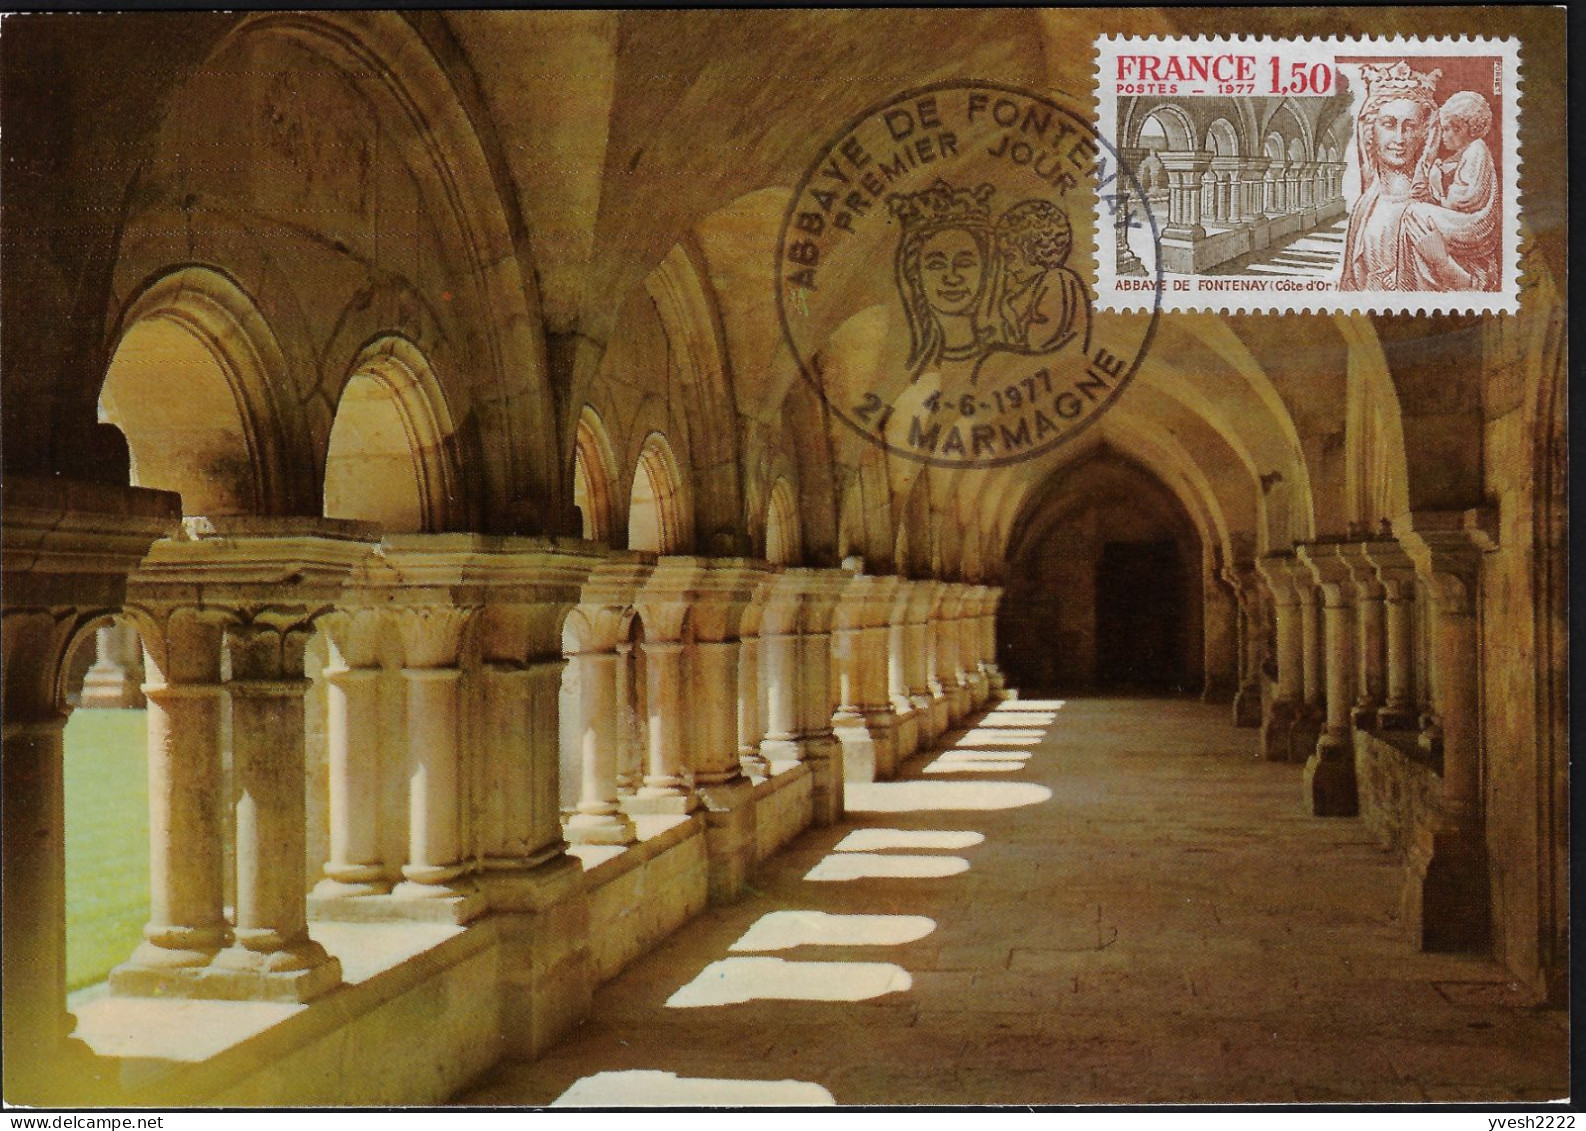 France 1977 Y&T 1938 Sur 2 Cartes Maxima. Abbaye Cistercienne De Fontenay. Cloître Et Statue De La Vierge. Marmagne - Abbayes & Monastères